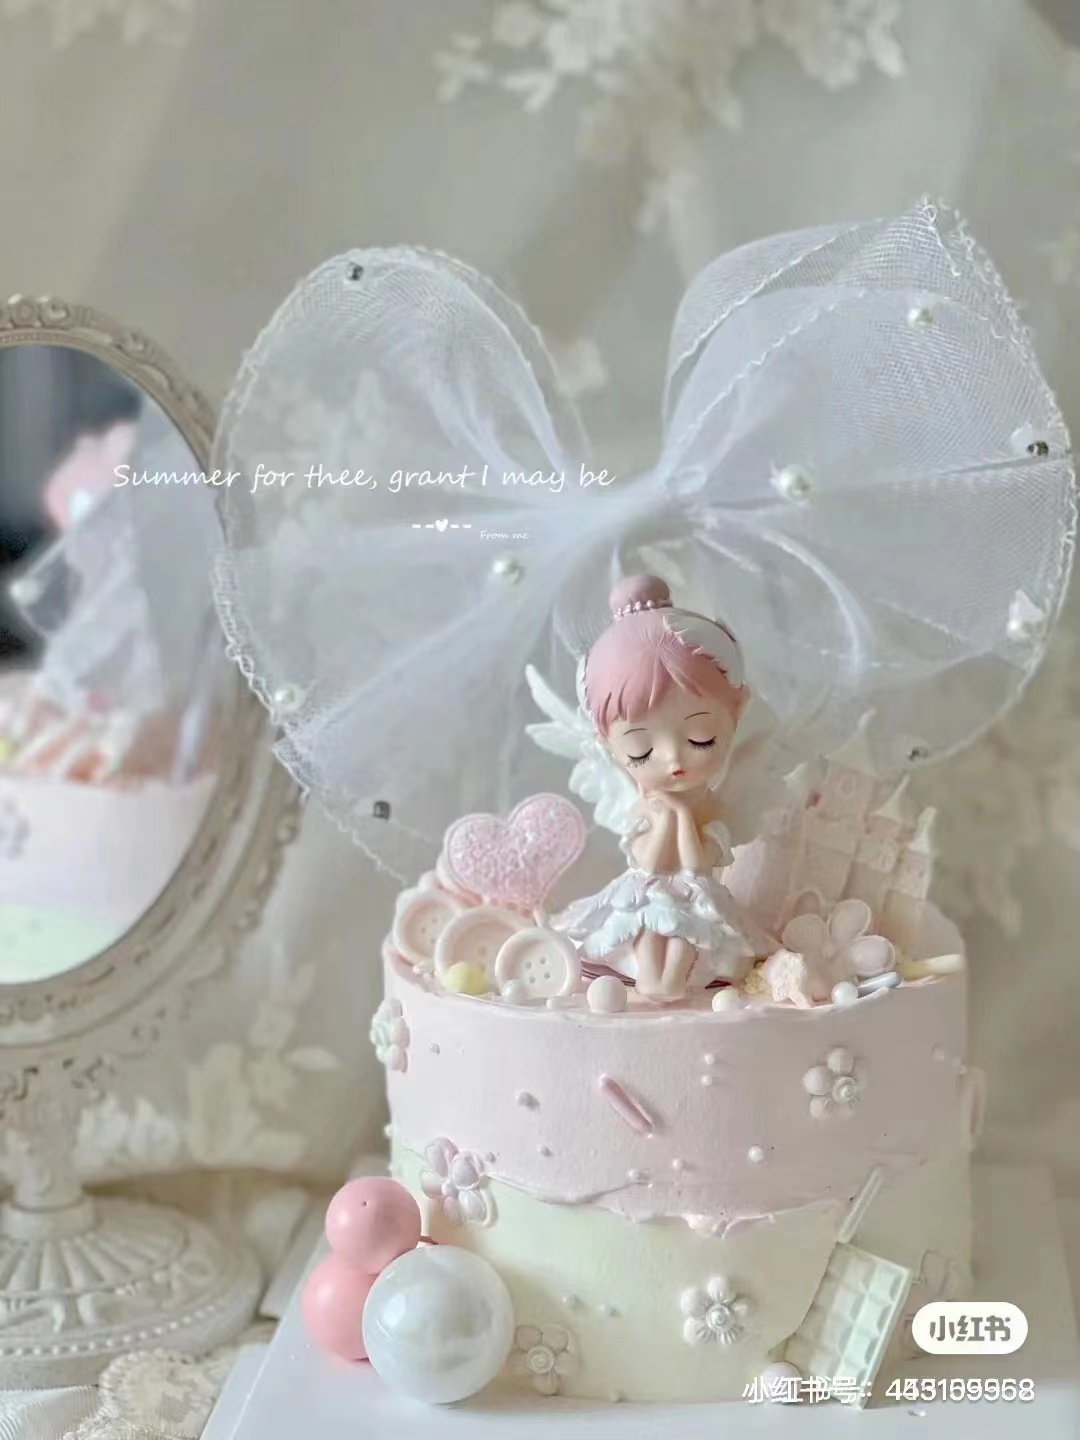 ダイヤ付きピンクリボンプラカードピンクベラ女の子お姫様の誕生日デザートベイクドケーキ飾り